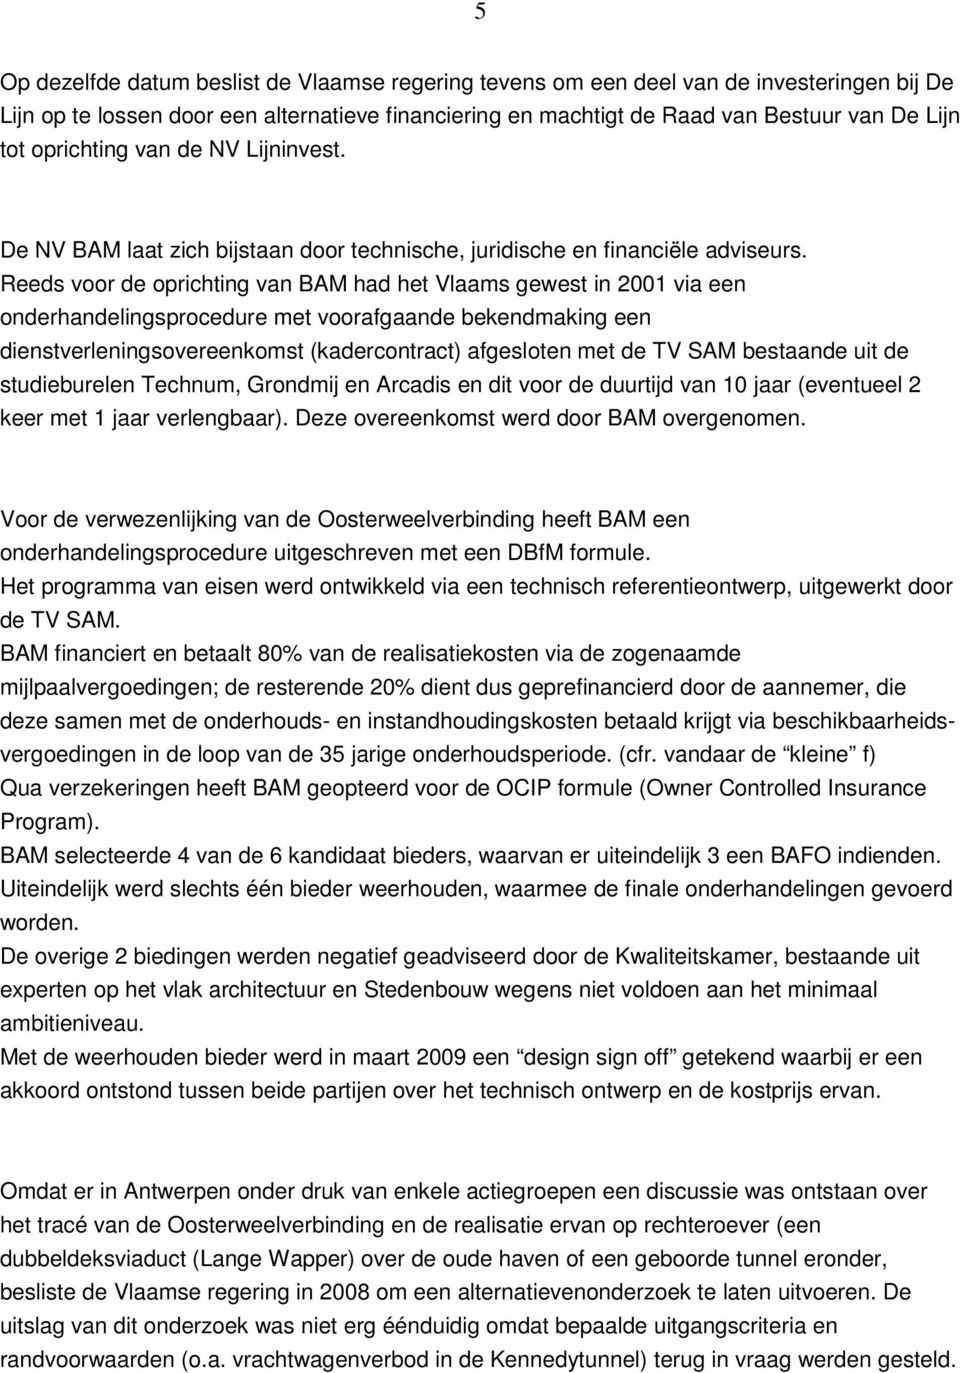 Reeds voor de oprichting van BAM had het Vlaams gewest in 2001 via een onderhandelingsprocedure met voorafgaande bekendmaking een dienstverleningsovereenkomst (kadercontract) afgesloten met de TV SAM